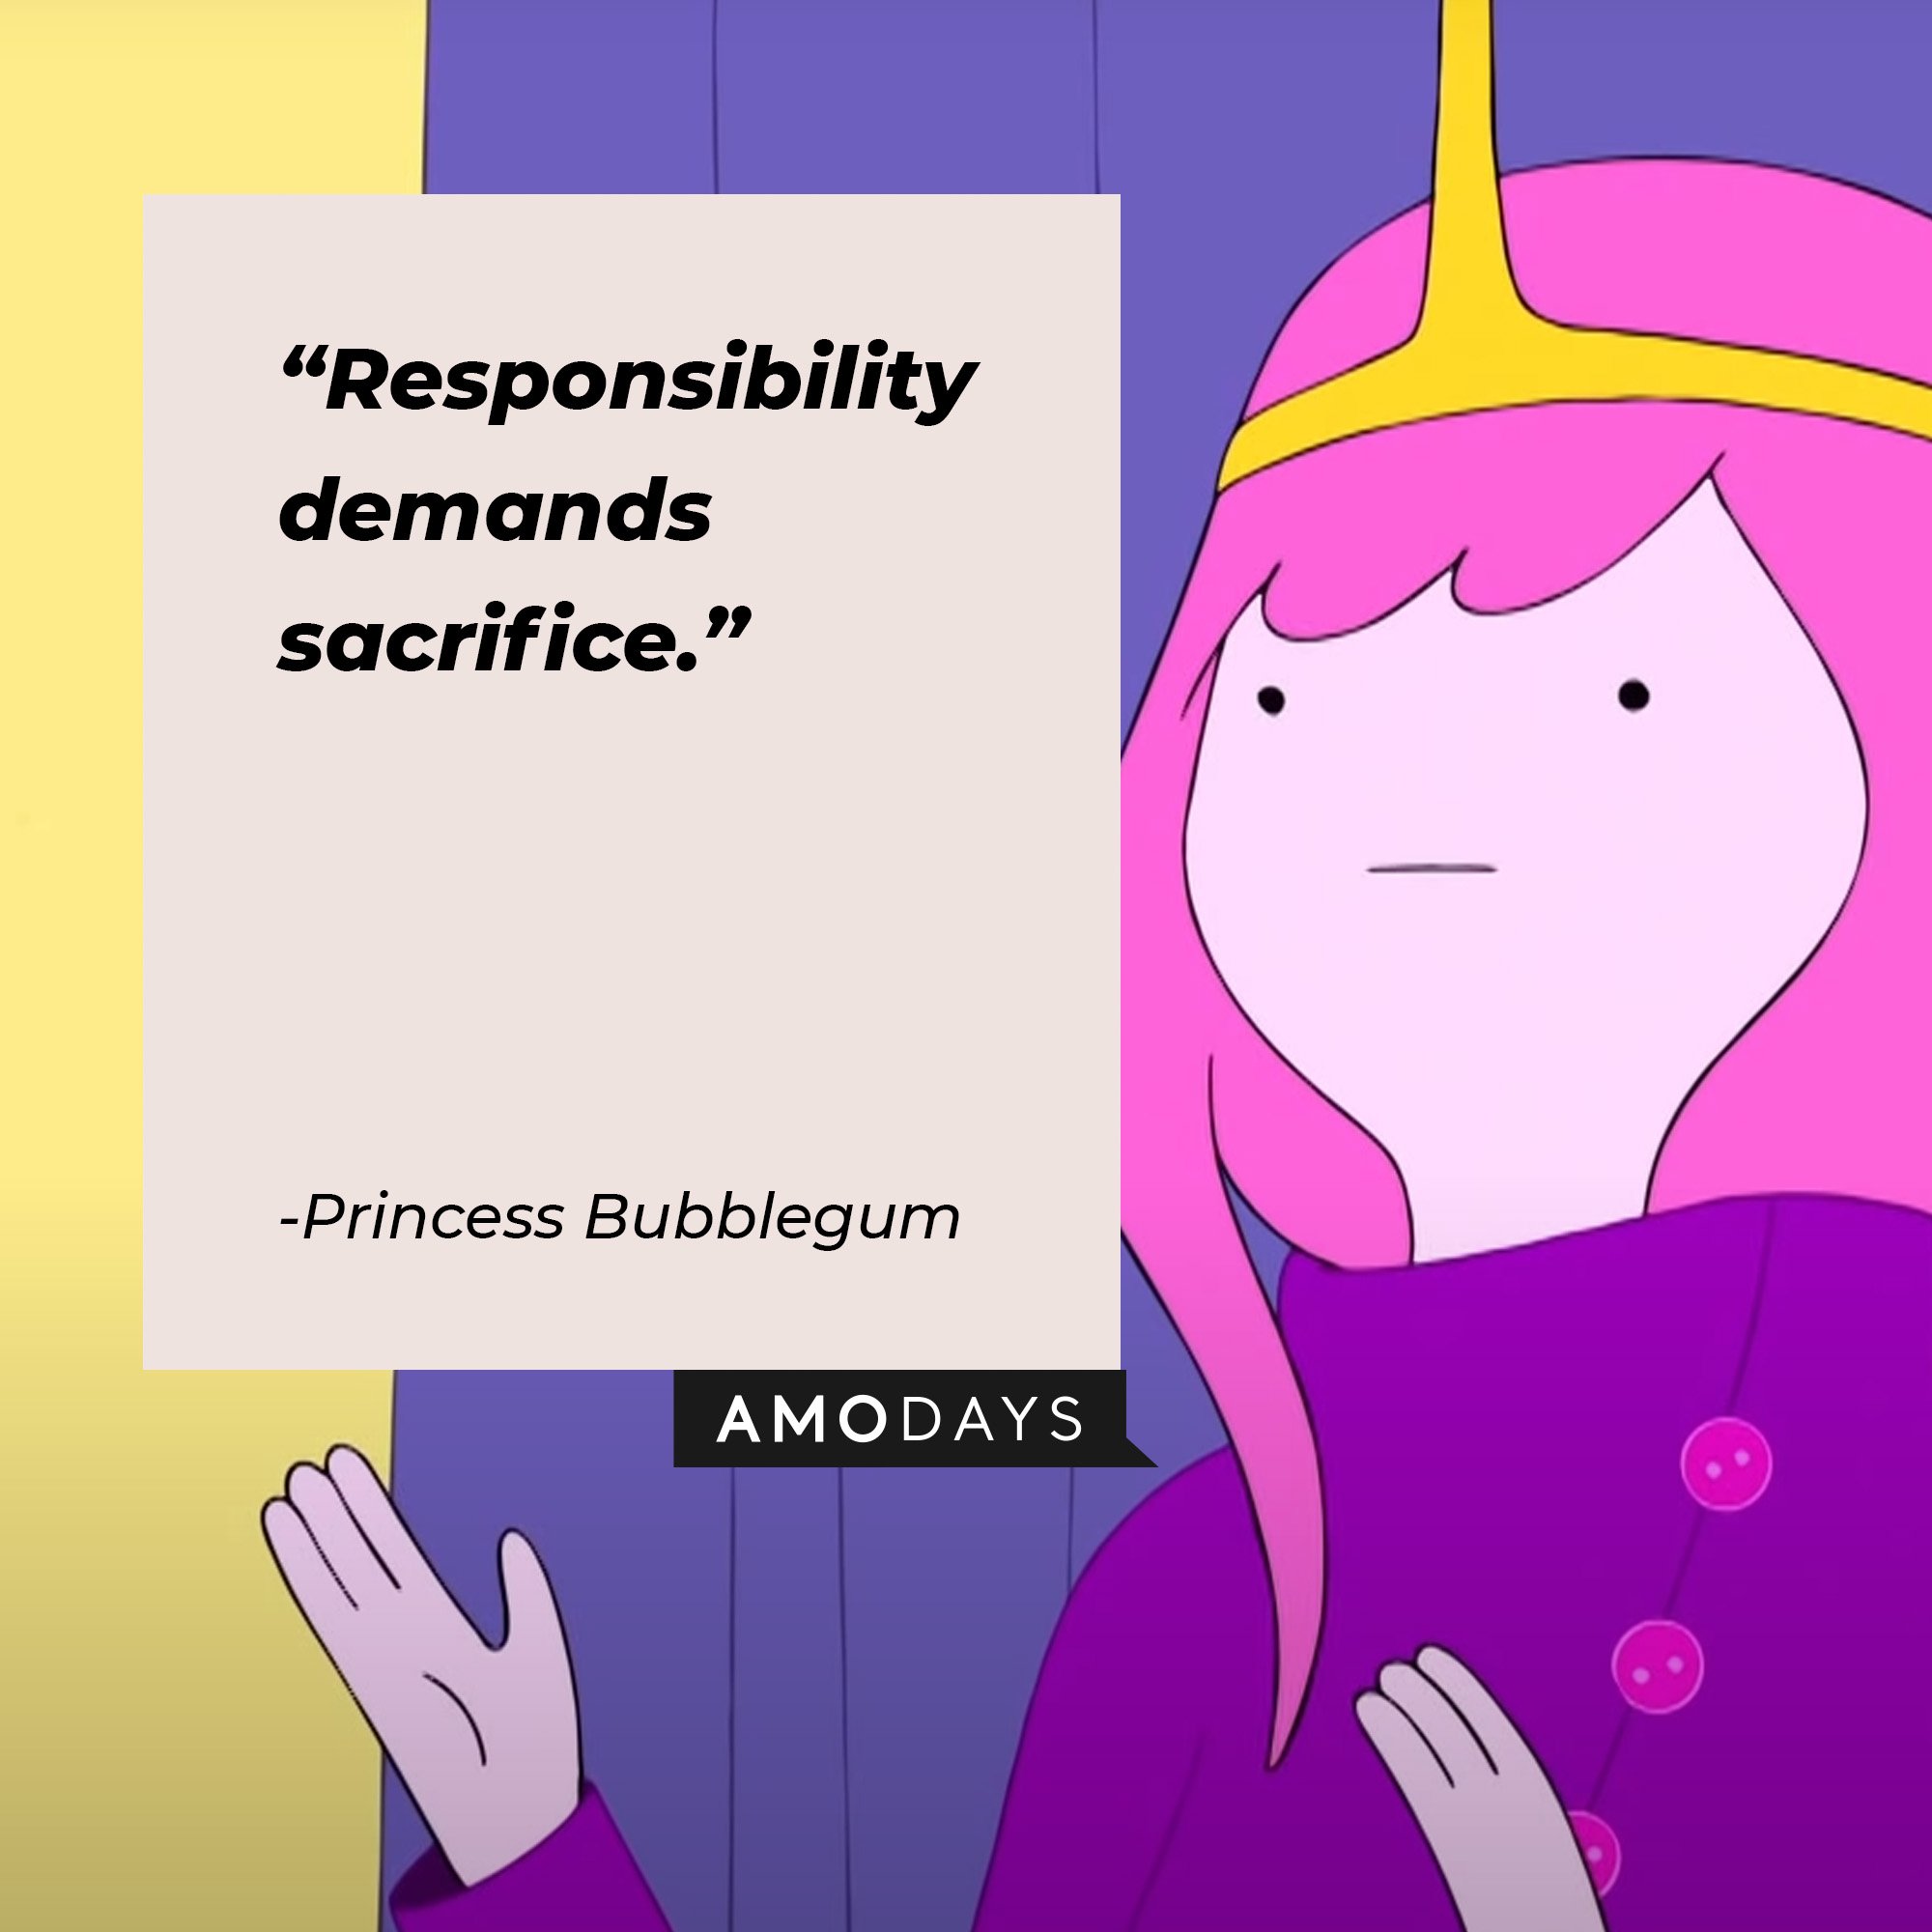 Princess Bubblegum’s quote: “Responsibility demands sacrifice."  | Image: AmoDays